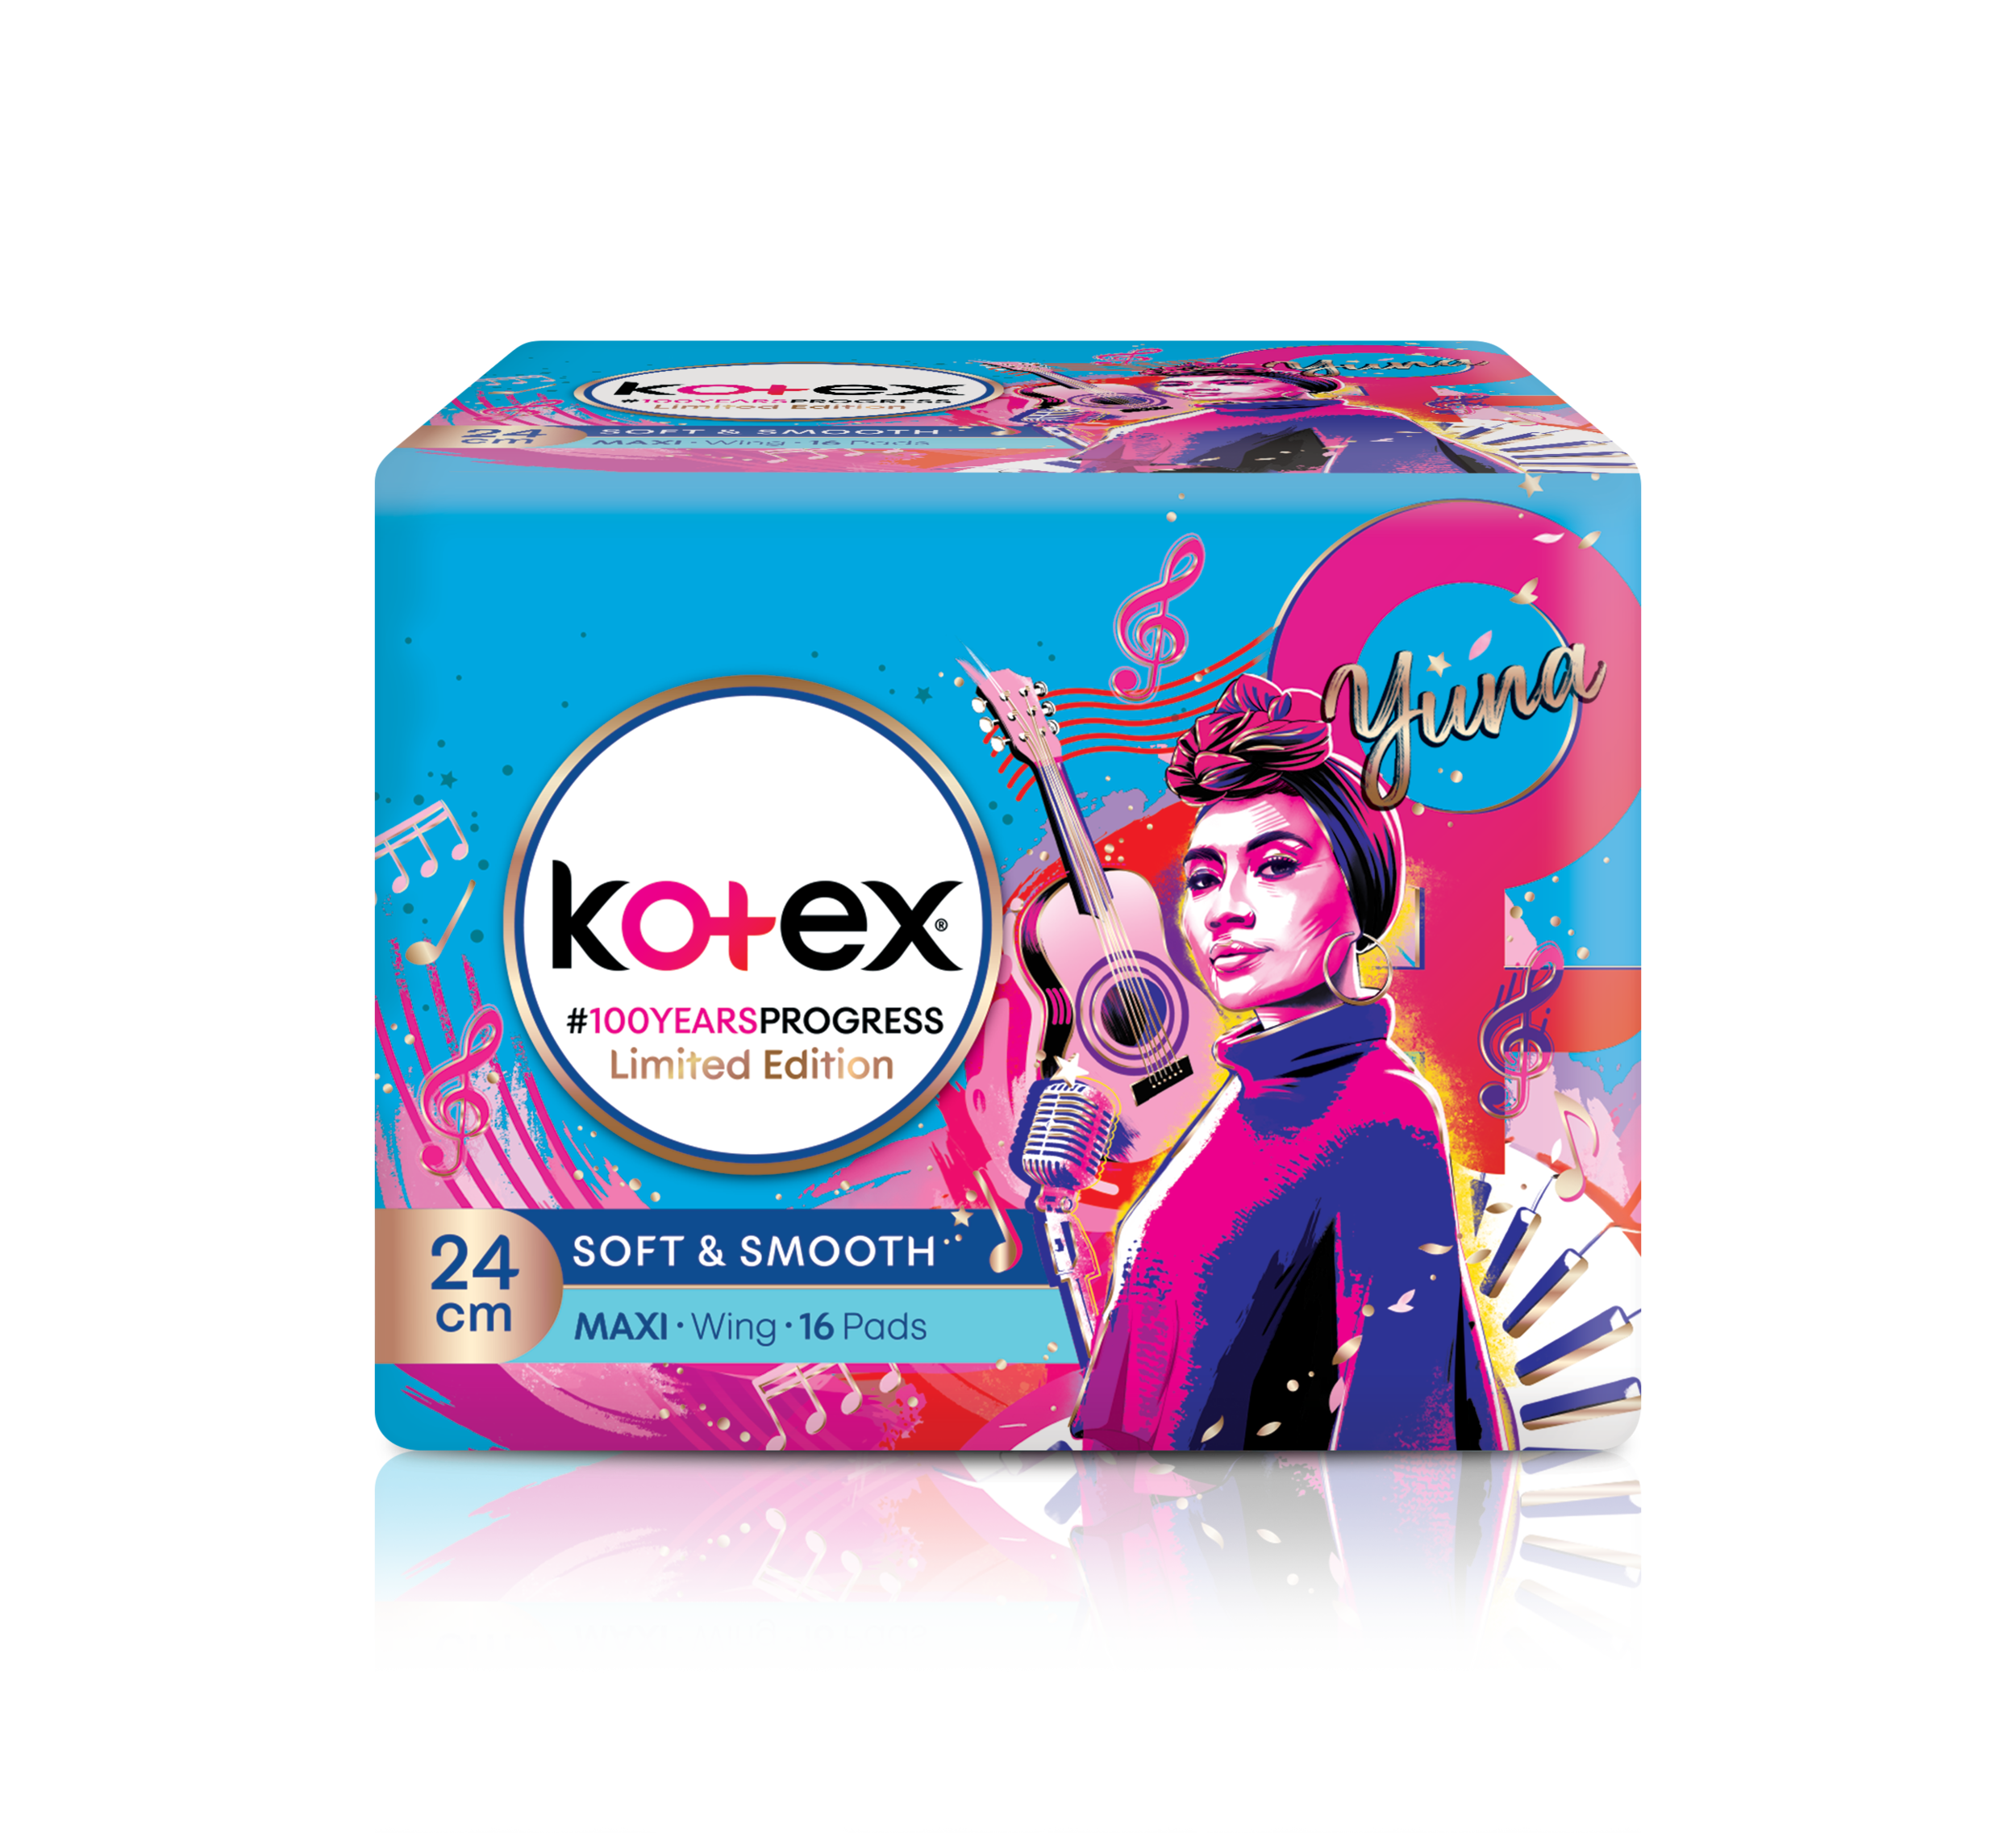 Kotex Limited Edition_Packshot (Yuna) (1).png